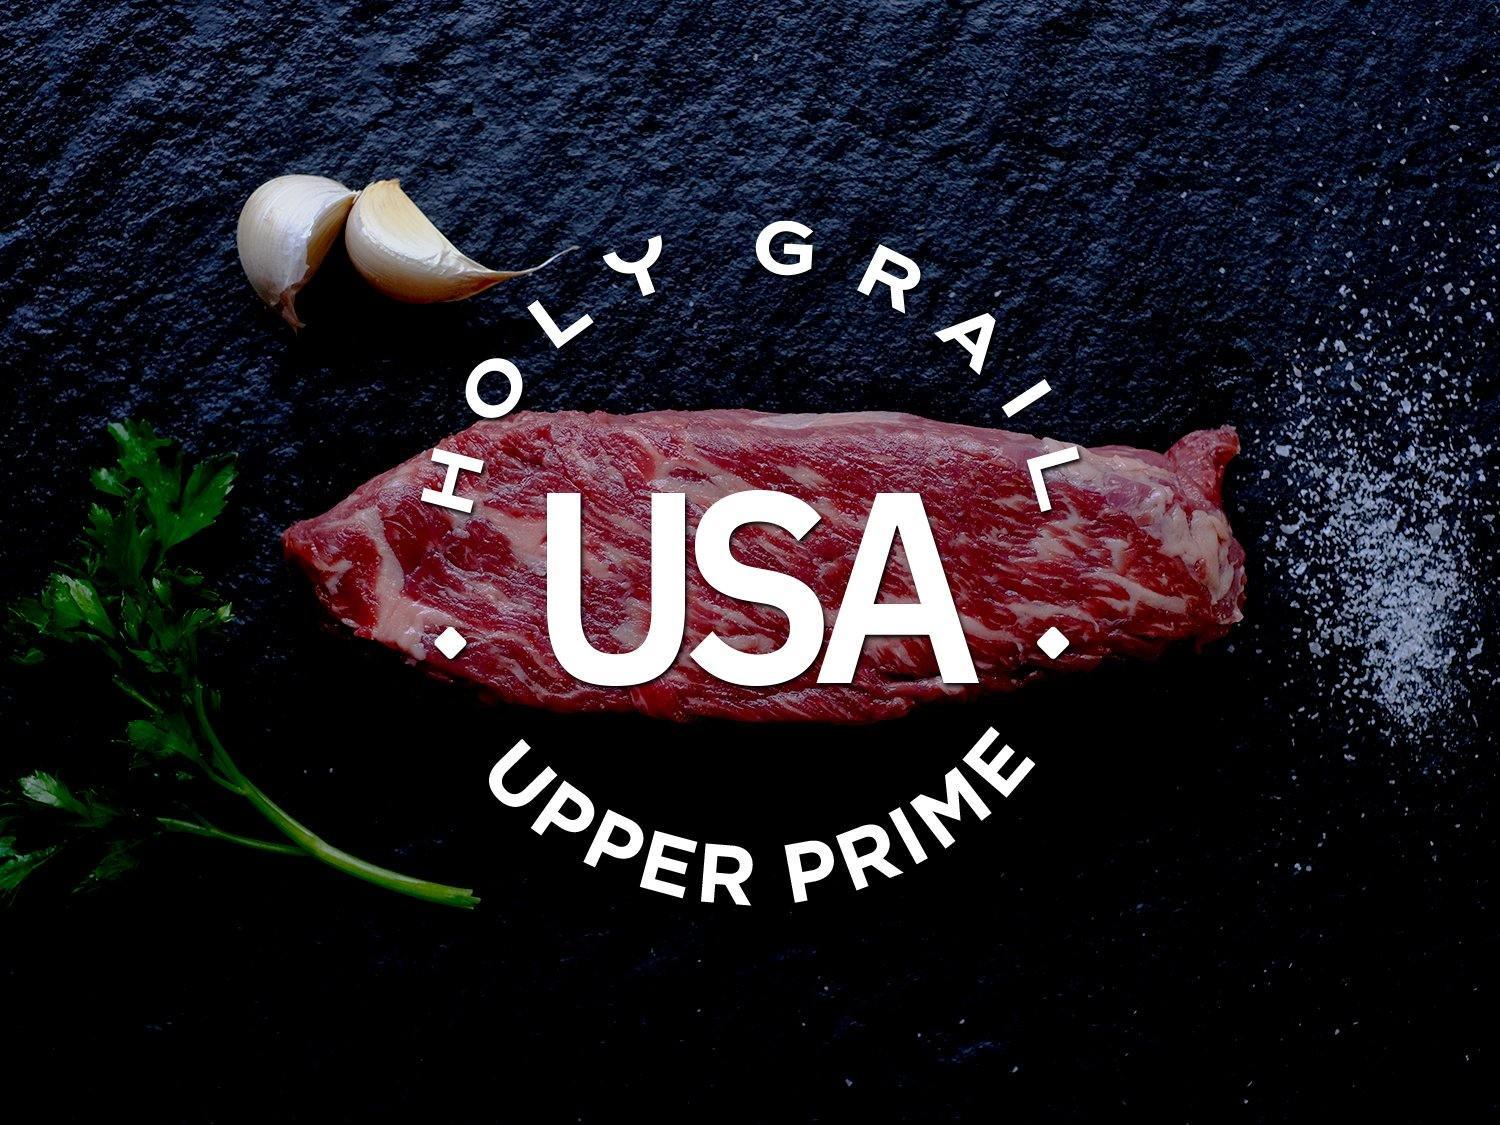 http://holygrailsteak.com/cdn/shop/products/upper-prime-black-angus-bavette-steak-8oz-holy-grail-steak-co.jpg?v=1678318243